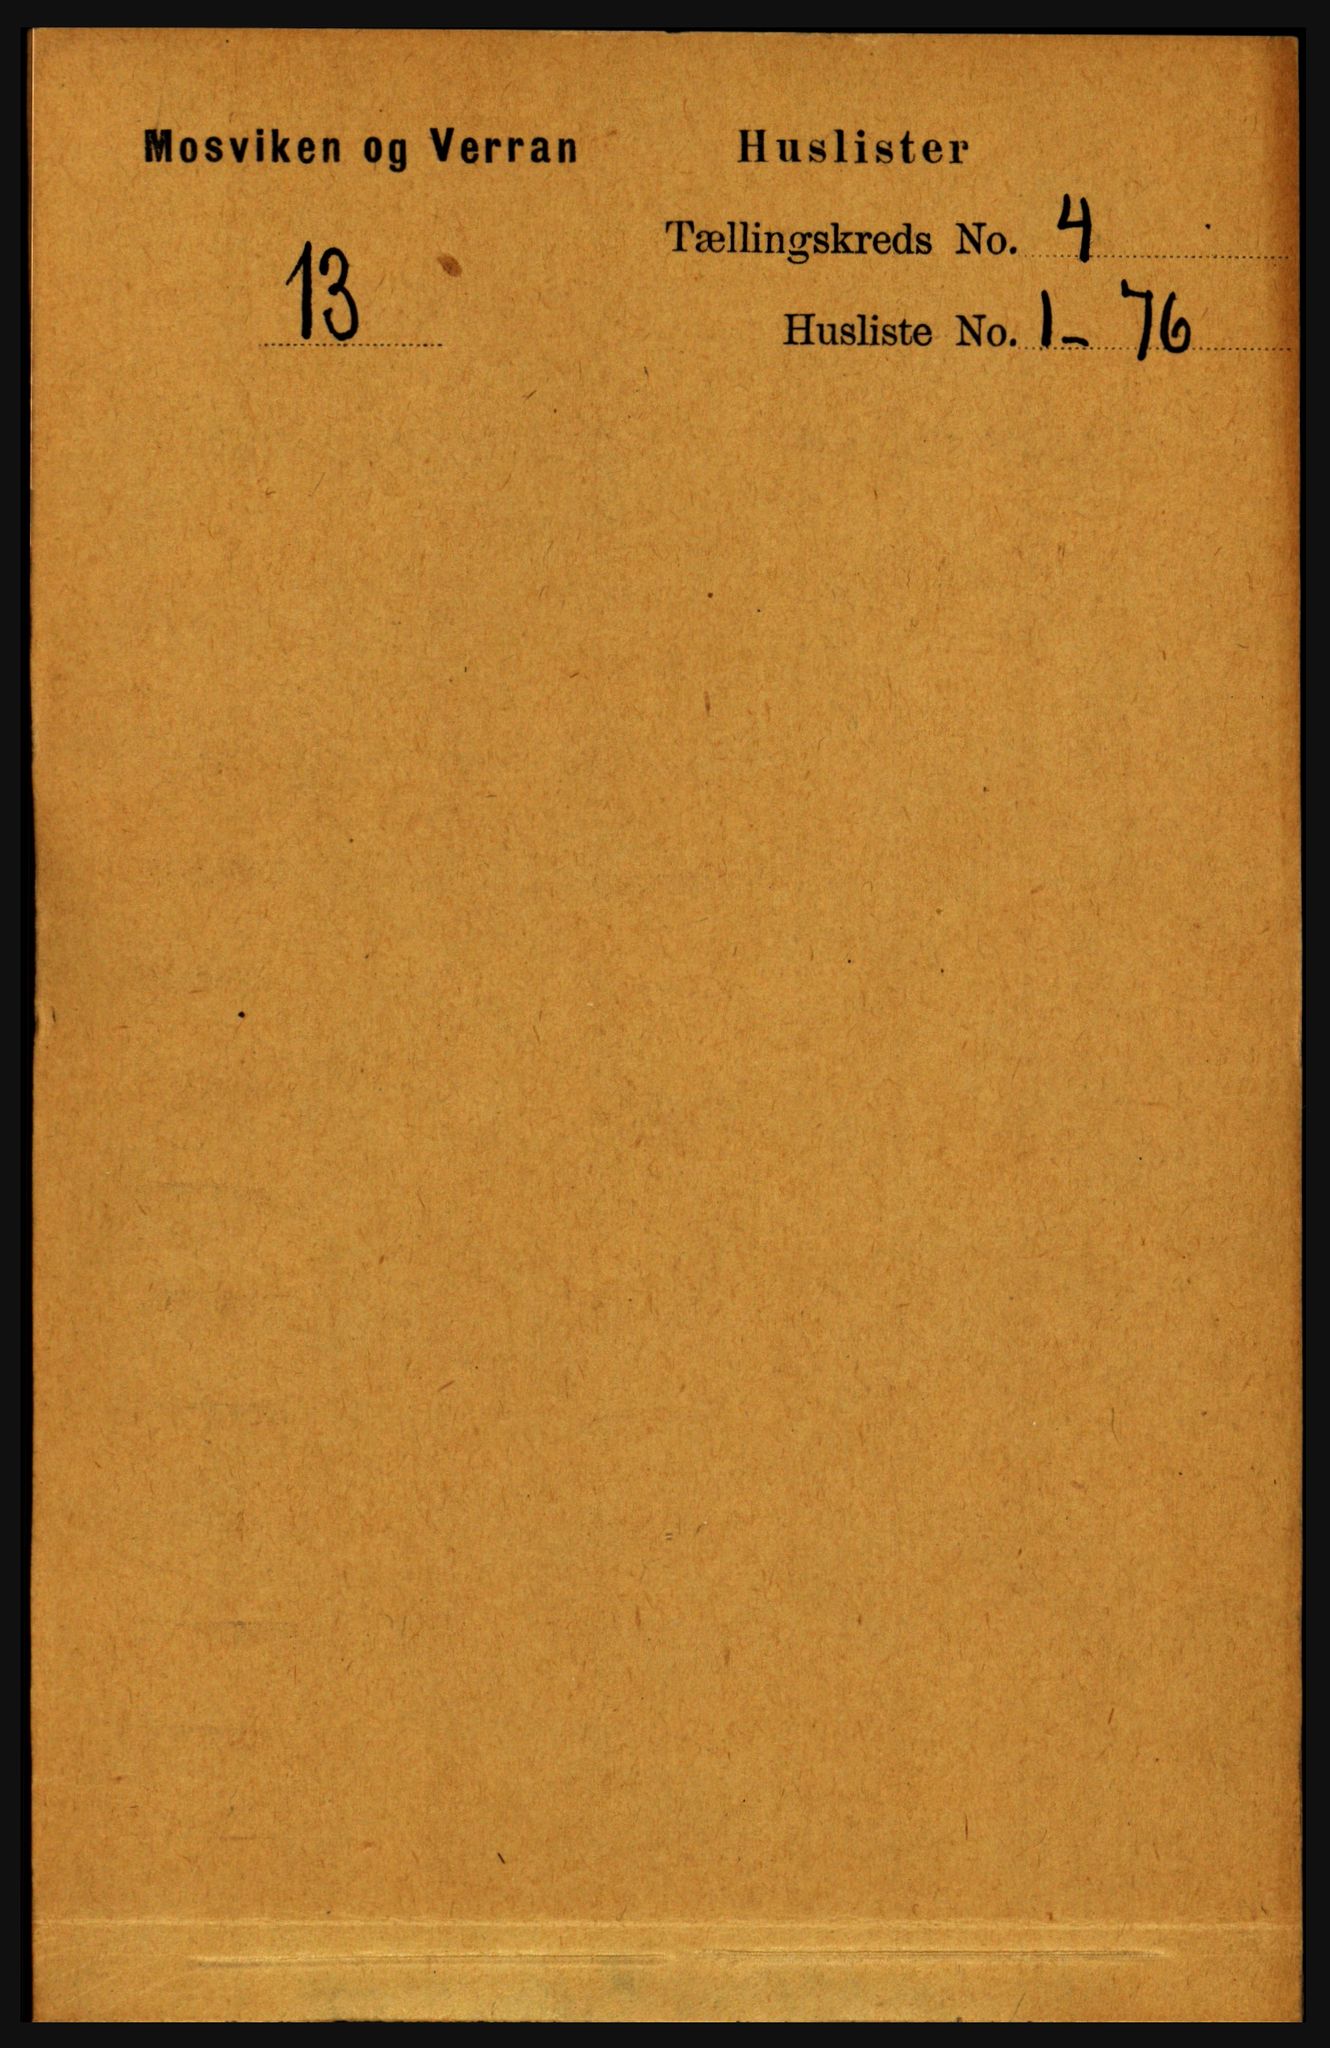 RA, Folketelling 1891 for 1723 Mosvik og Verran herred, 1891, s. 1316